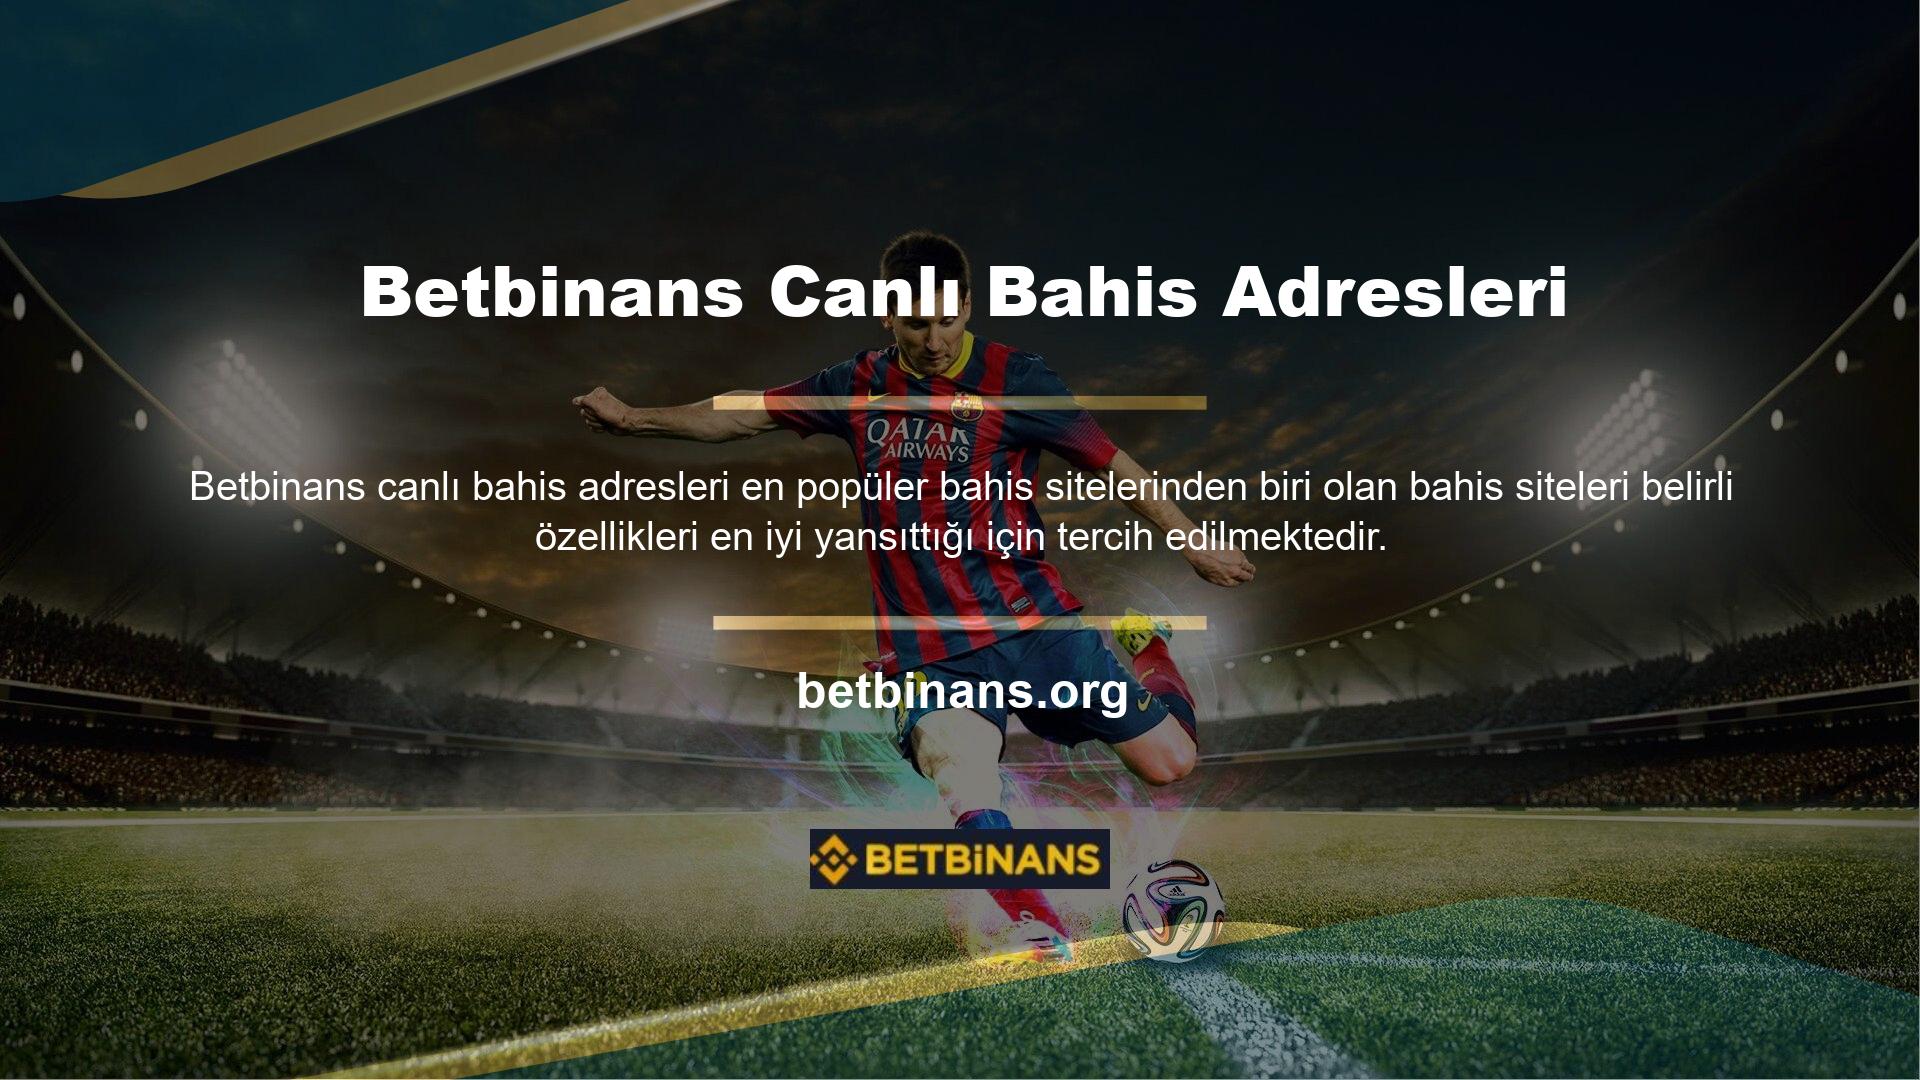 Böyle bir site olan Betbinans canlı bahis adresi casino sitesi Türkiye'de faaliyet göstermektedir